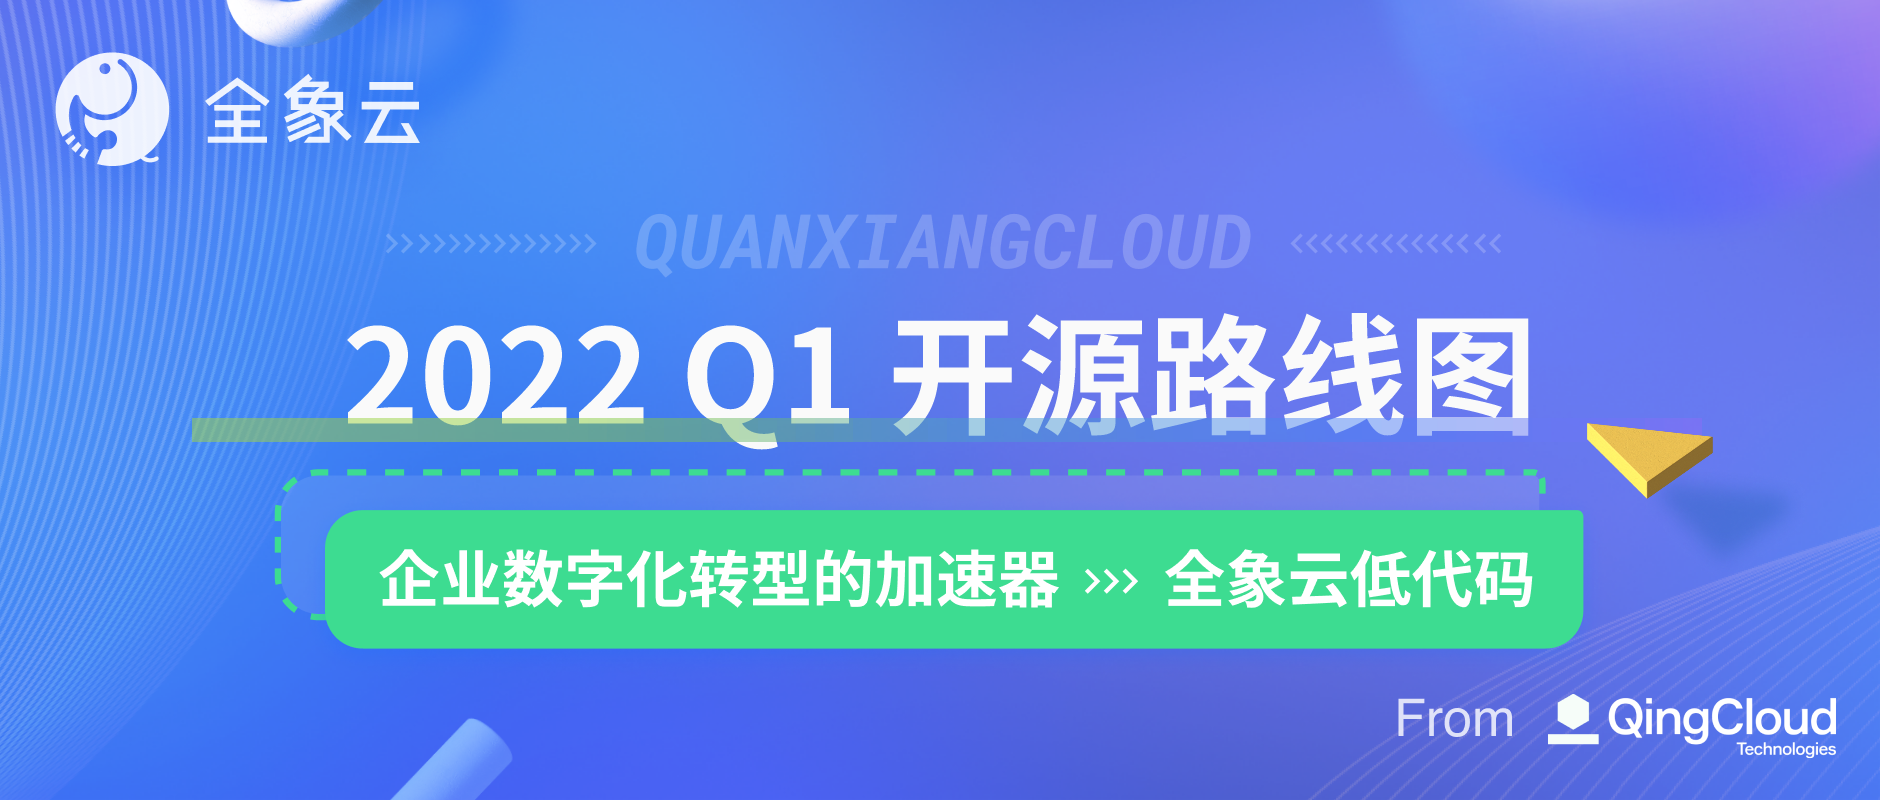 QuanXiang 2022 Q1 开源路线图